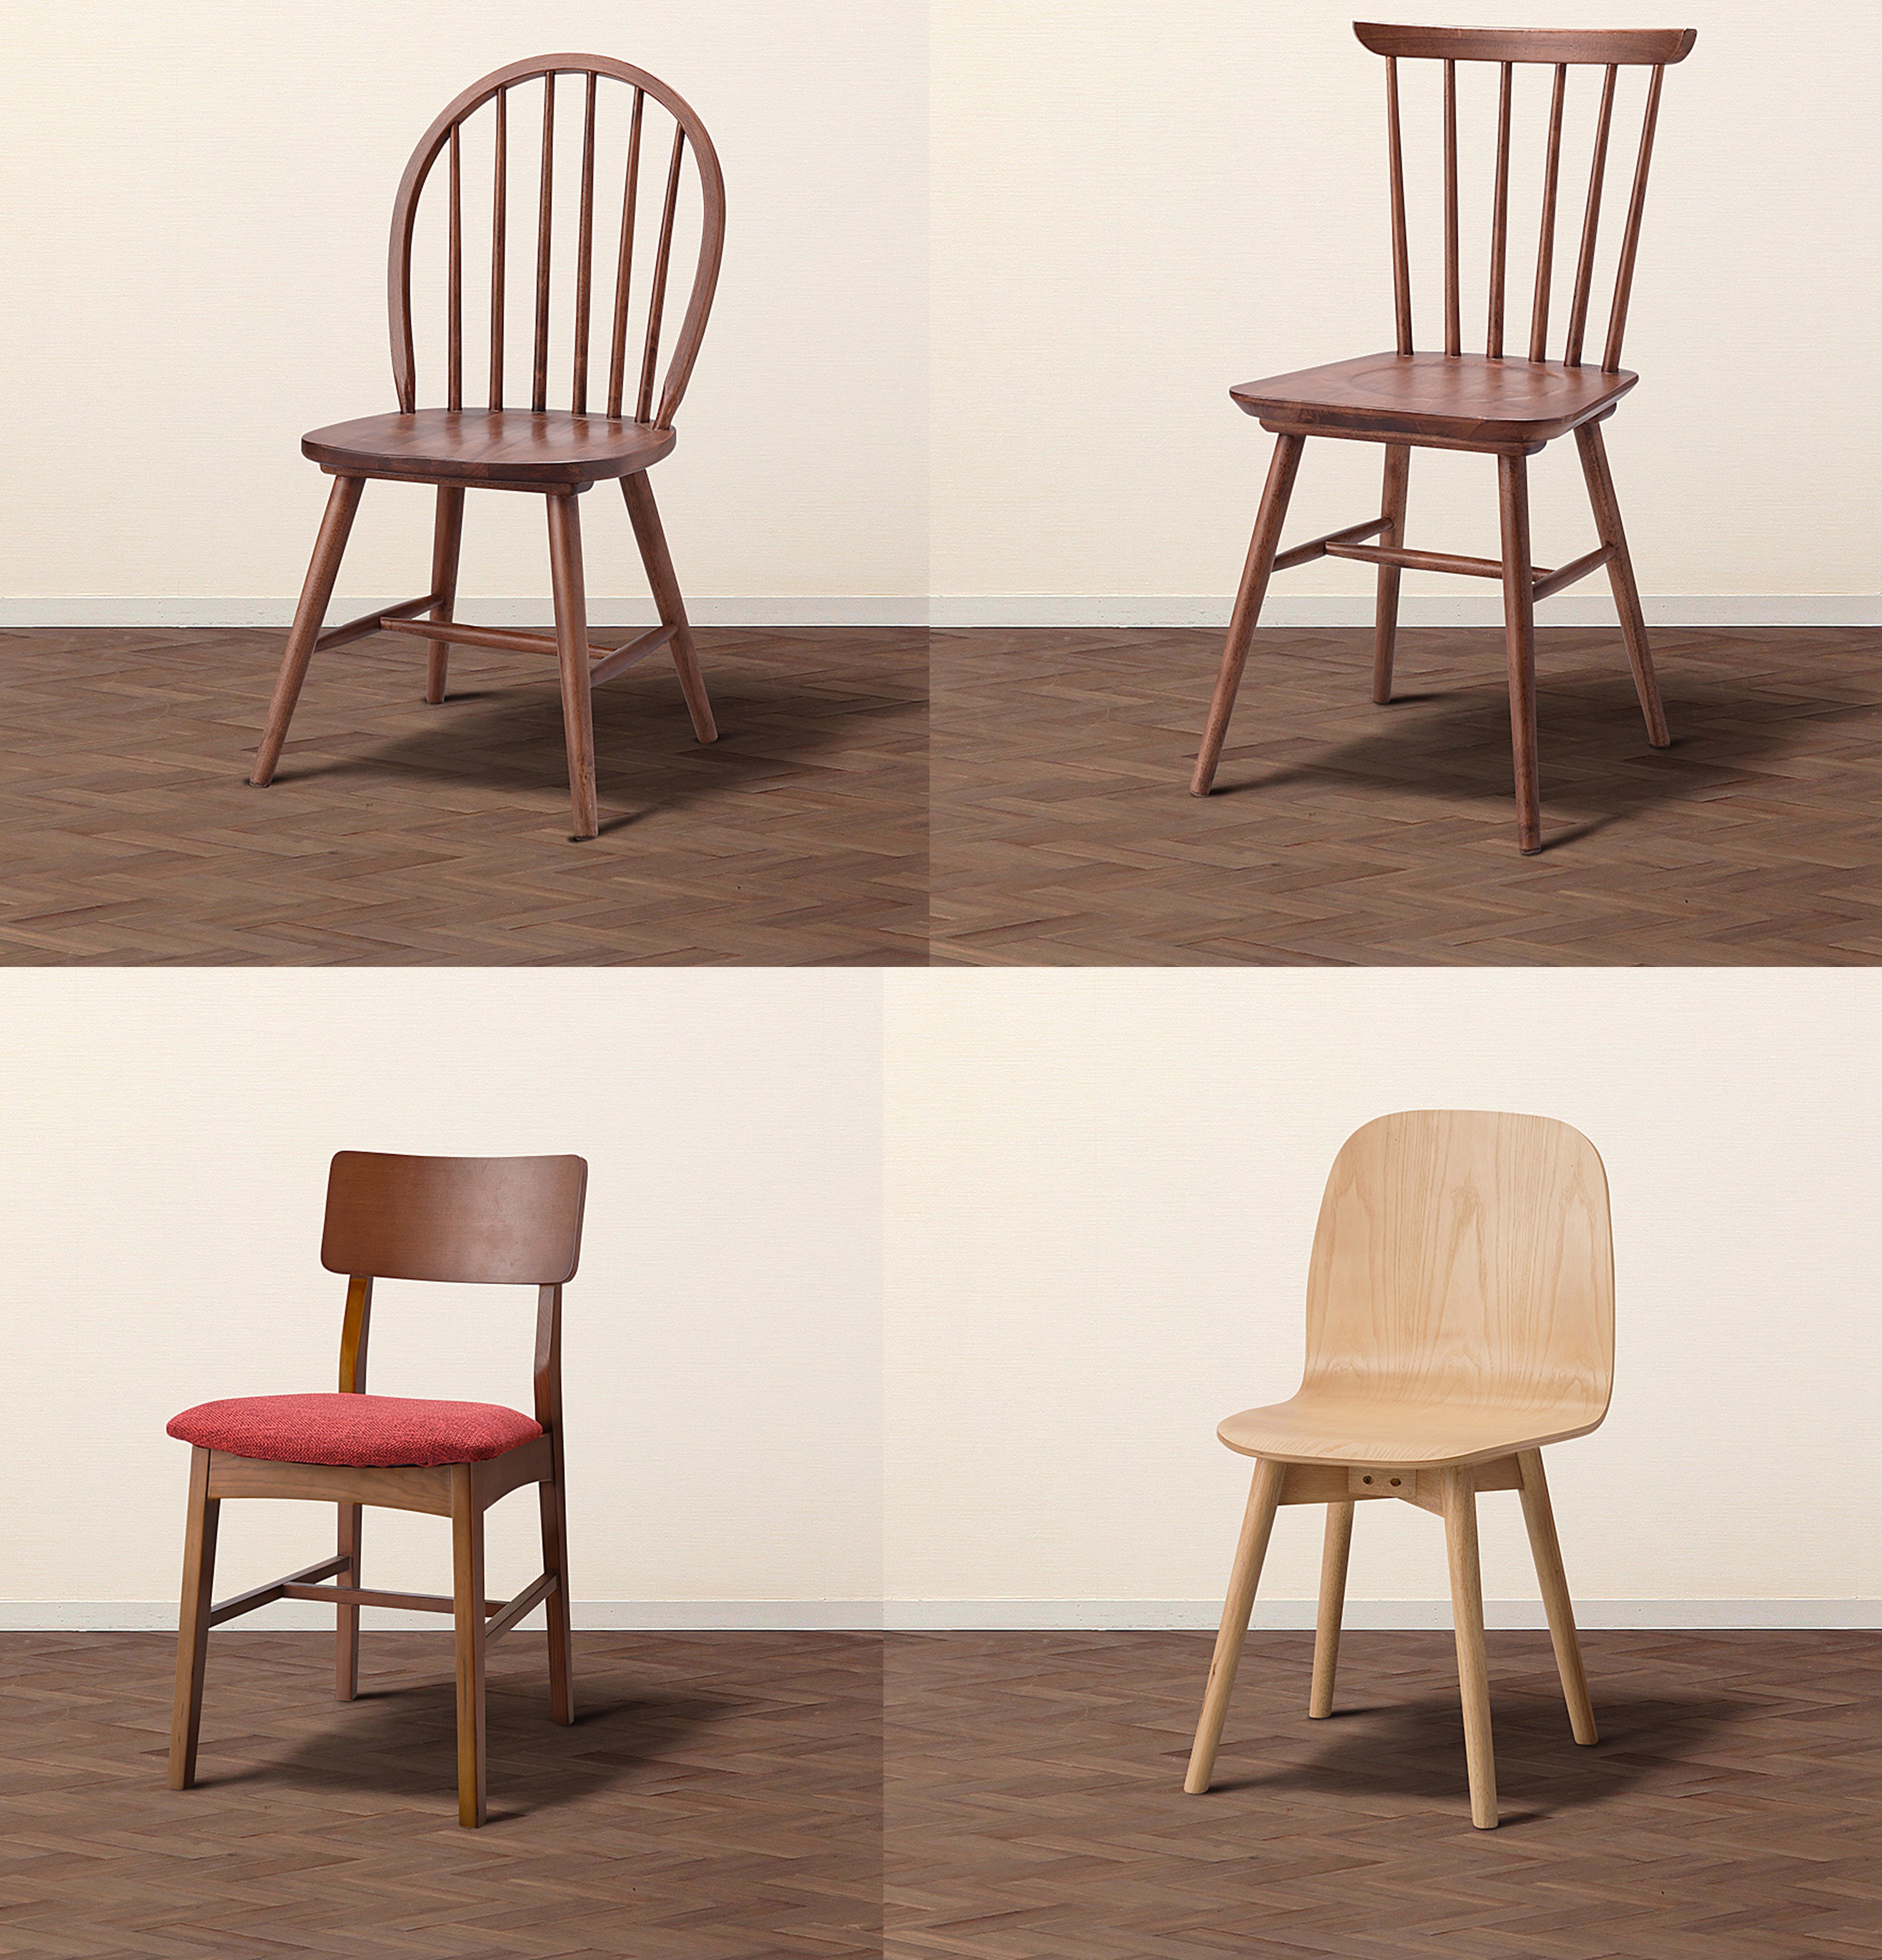 椅子的不同角度图片